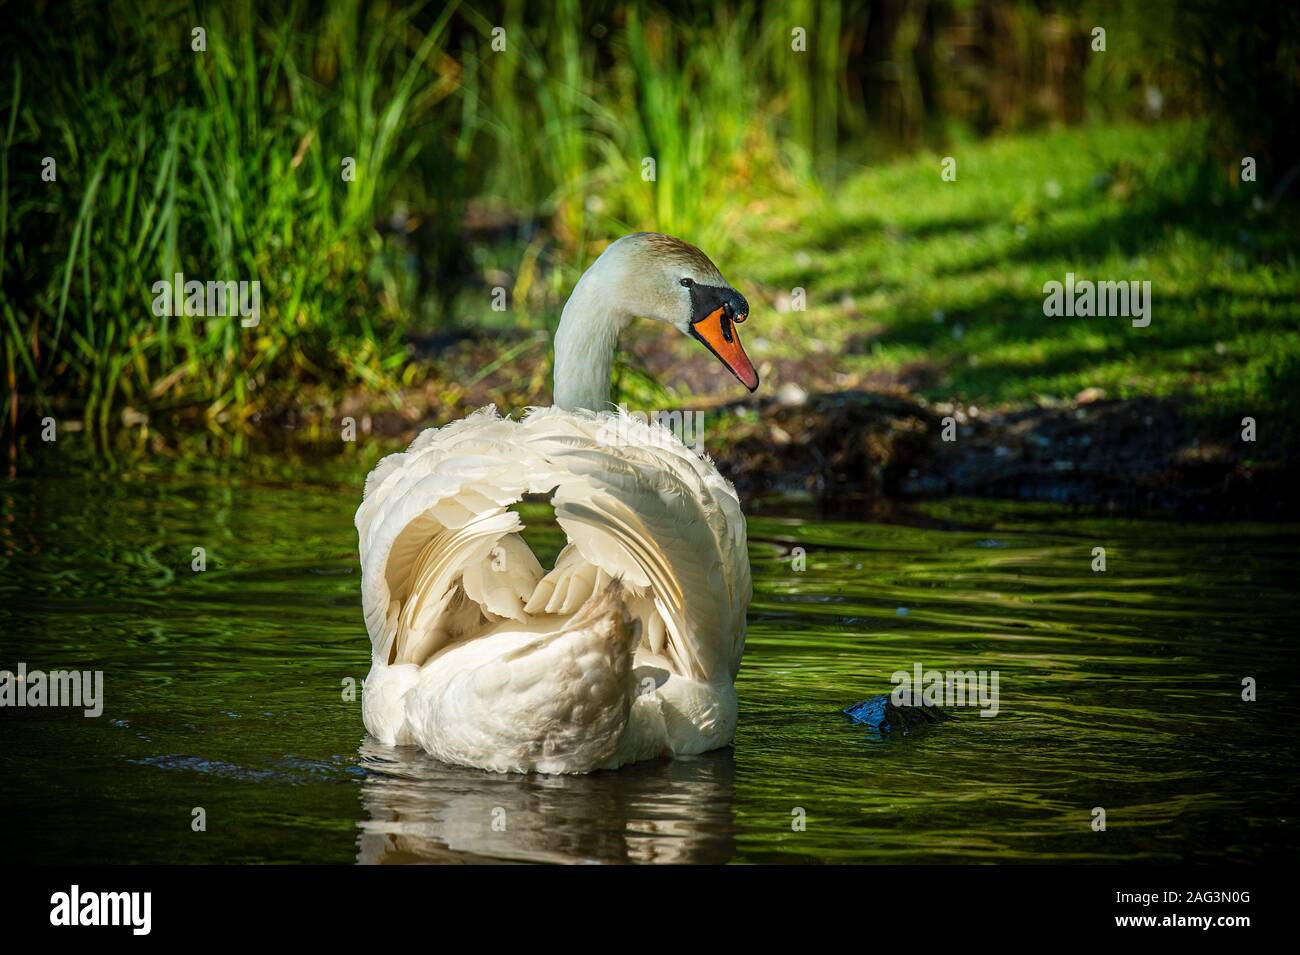 Cygne blanc nageant dans un étang entouré d'une grande herbe verte. Banque D'Images